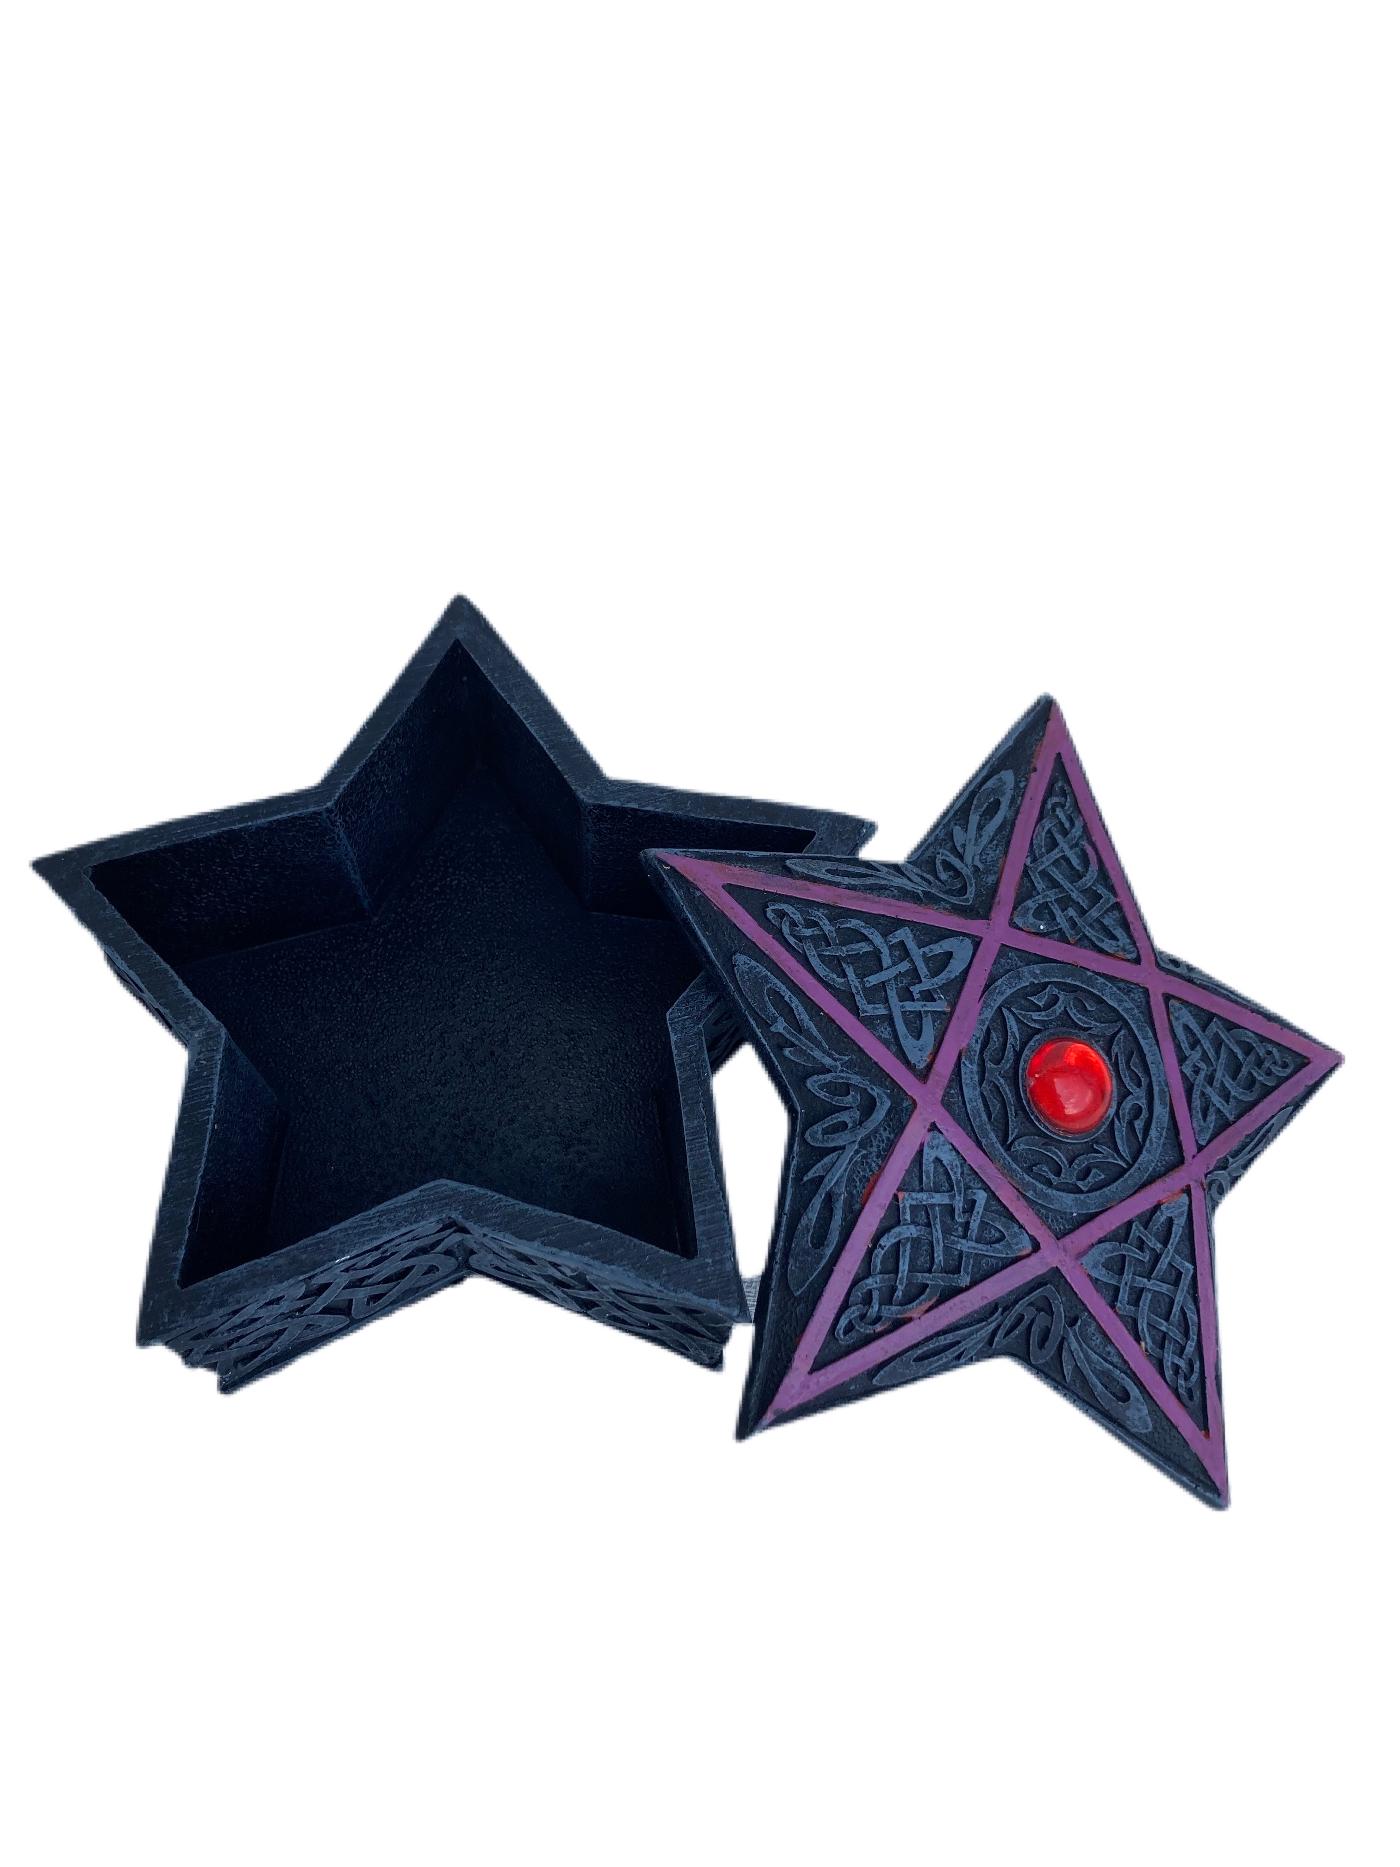 Resin Pentagram Design Trinket Box